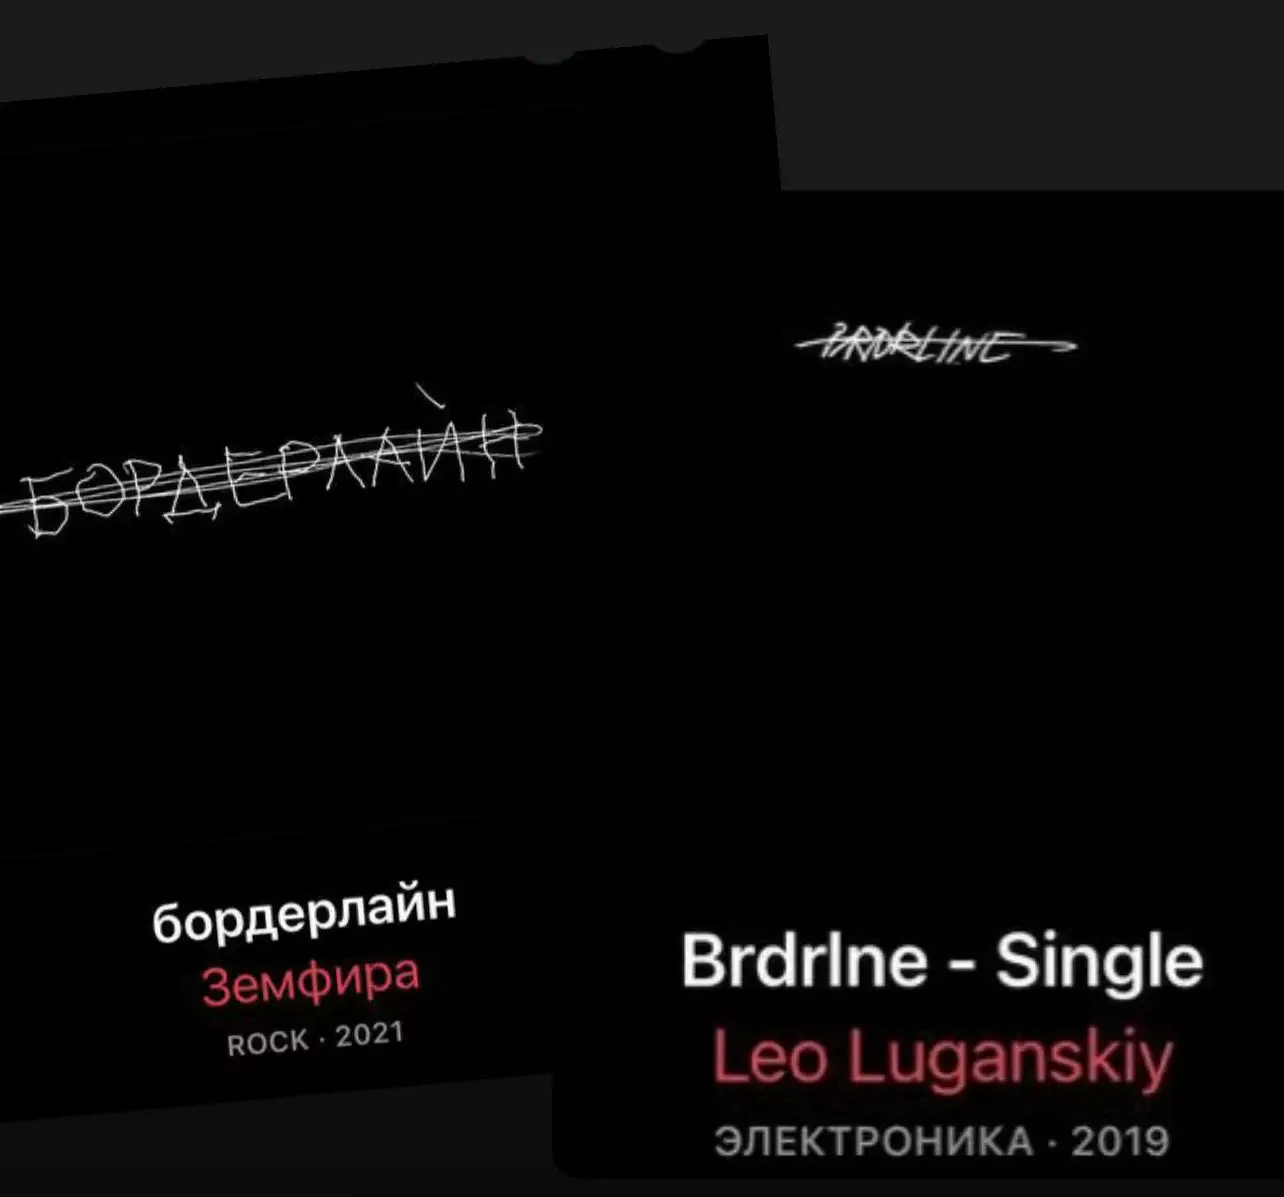 Обкладинка пісні музиканта Лео Луганського і обкладинка альбому Земфіри